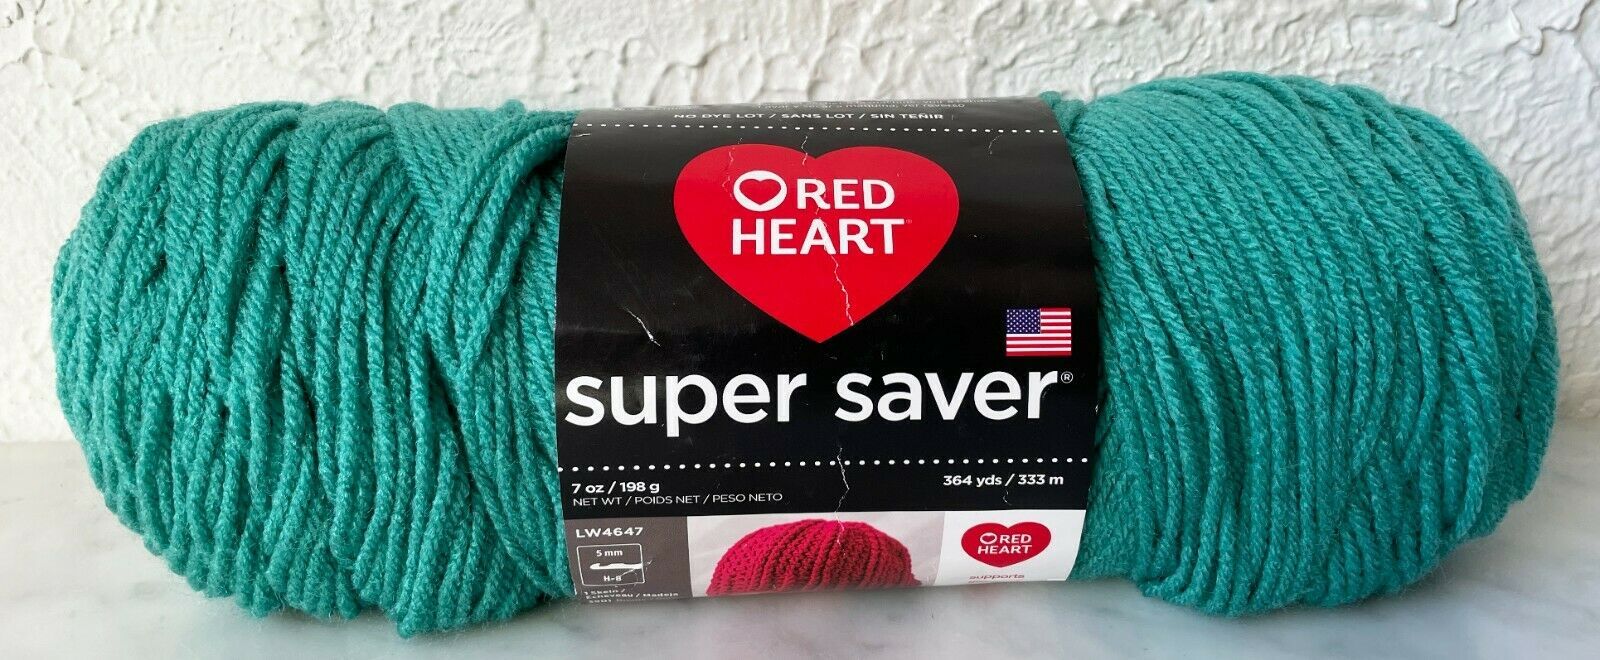 Red Heart Super Saver Yarn, Lavender 0358, Medium 4 - 1 skein, 7 oz